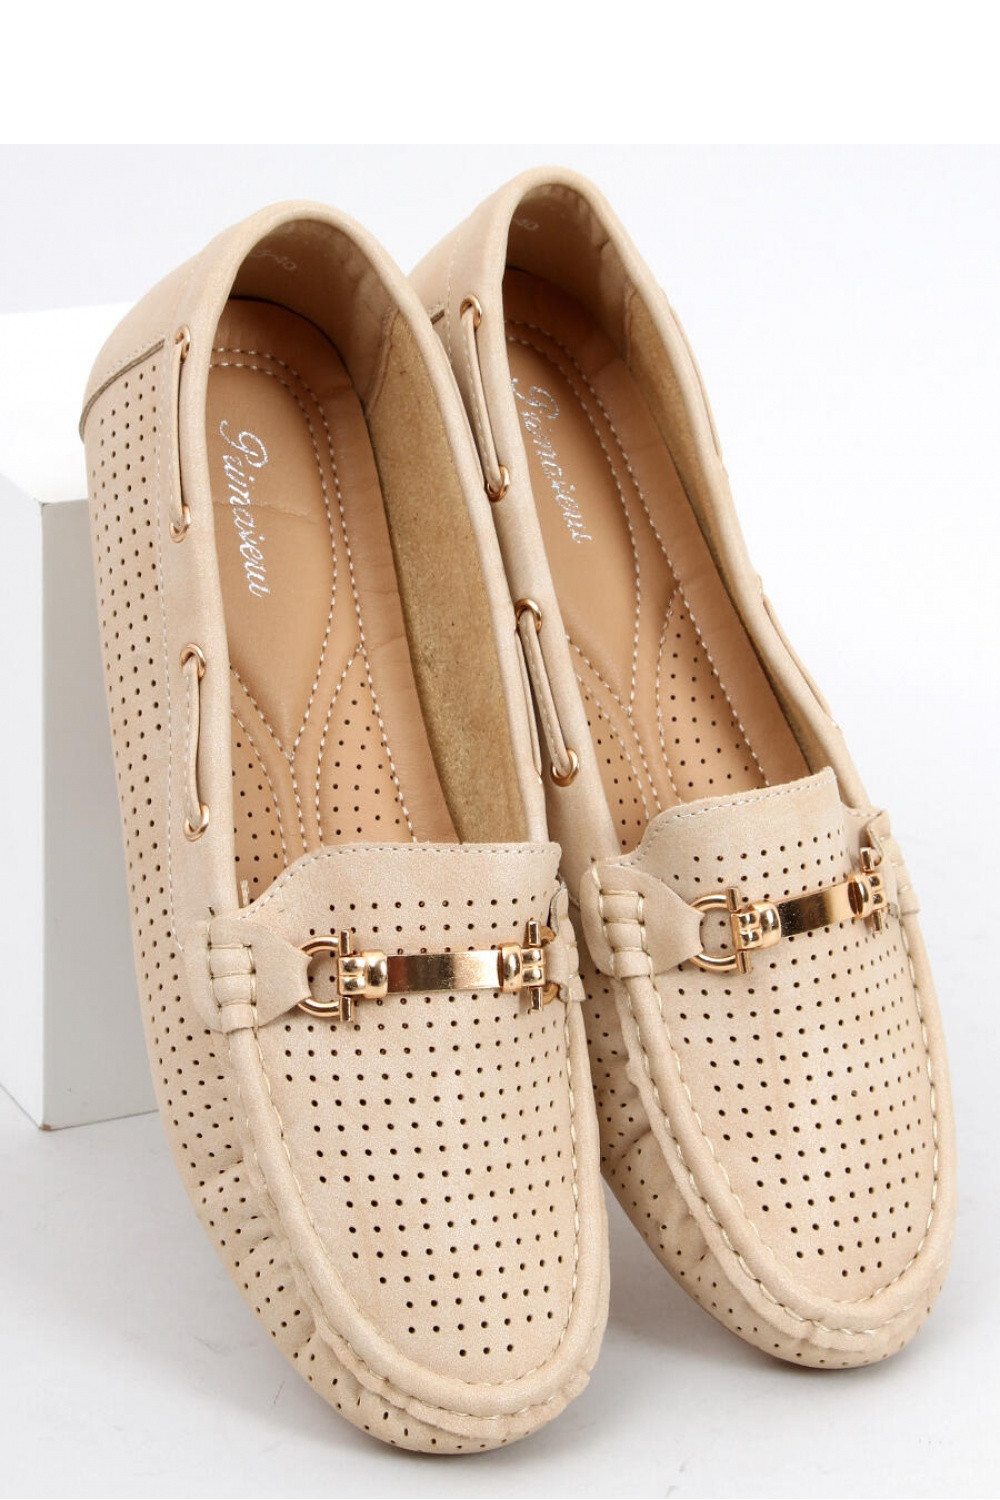 Dámské boty / Mokasíny béžová béžová 36 model 18409063 - Inello